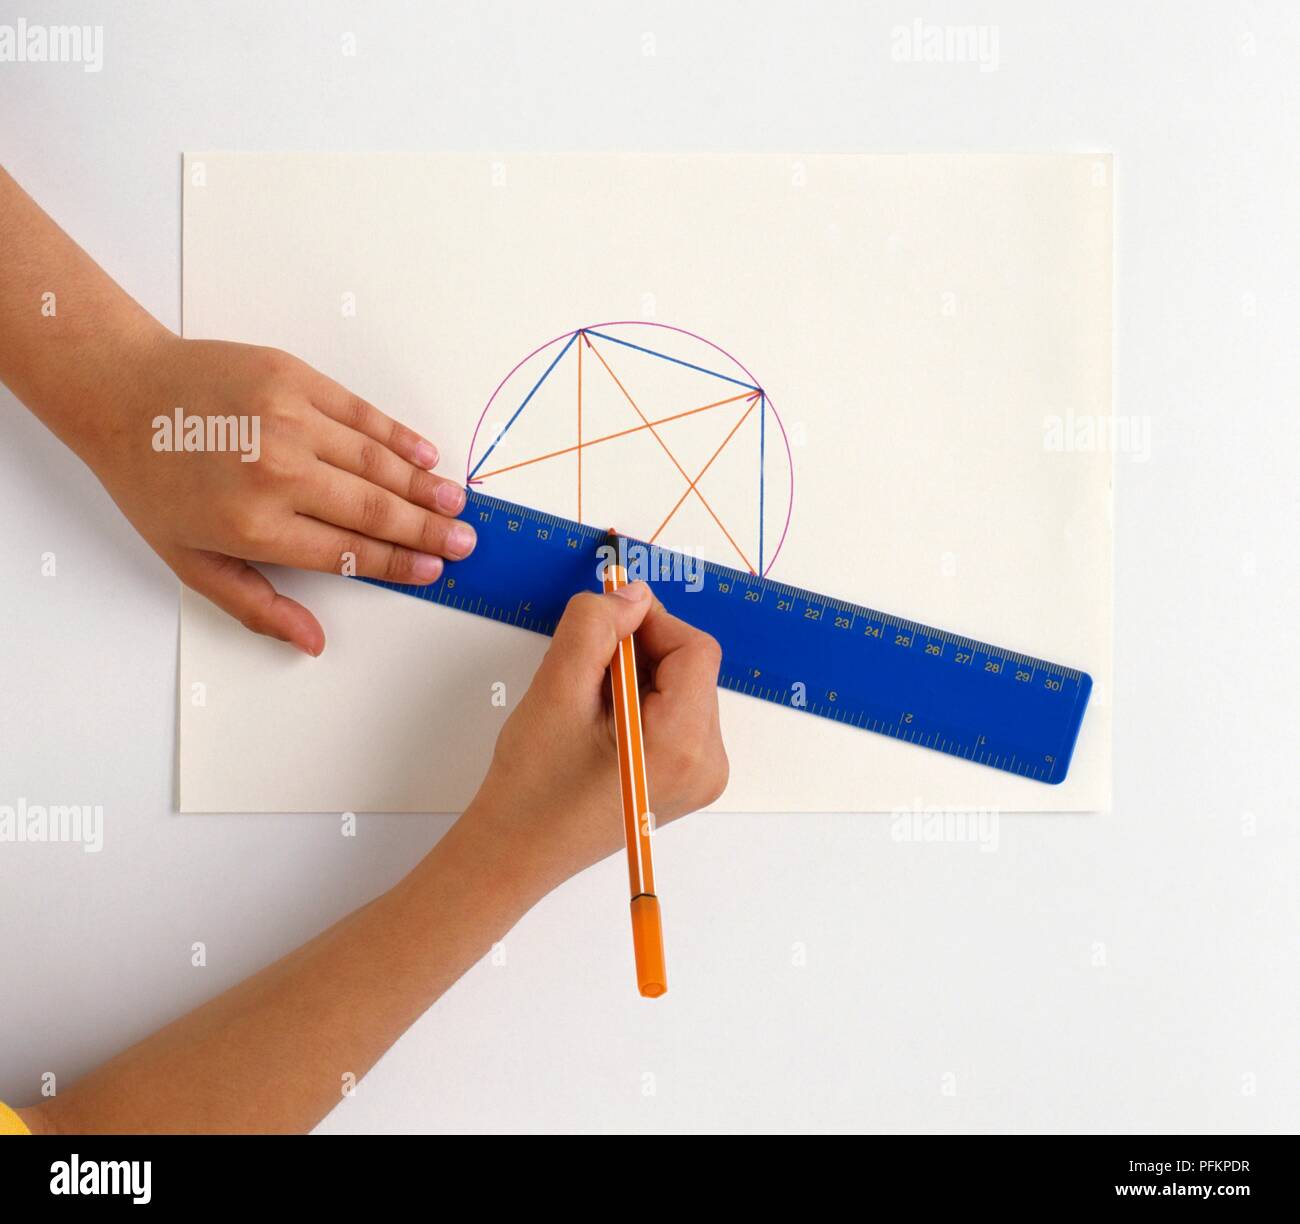 La main du garçon formes géométriques de dessin sur papier, à l'aide de stylo-feutre et d'une règle Banque D'Images